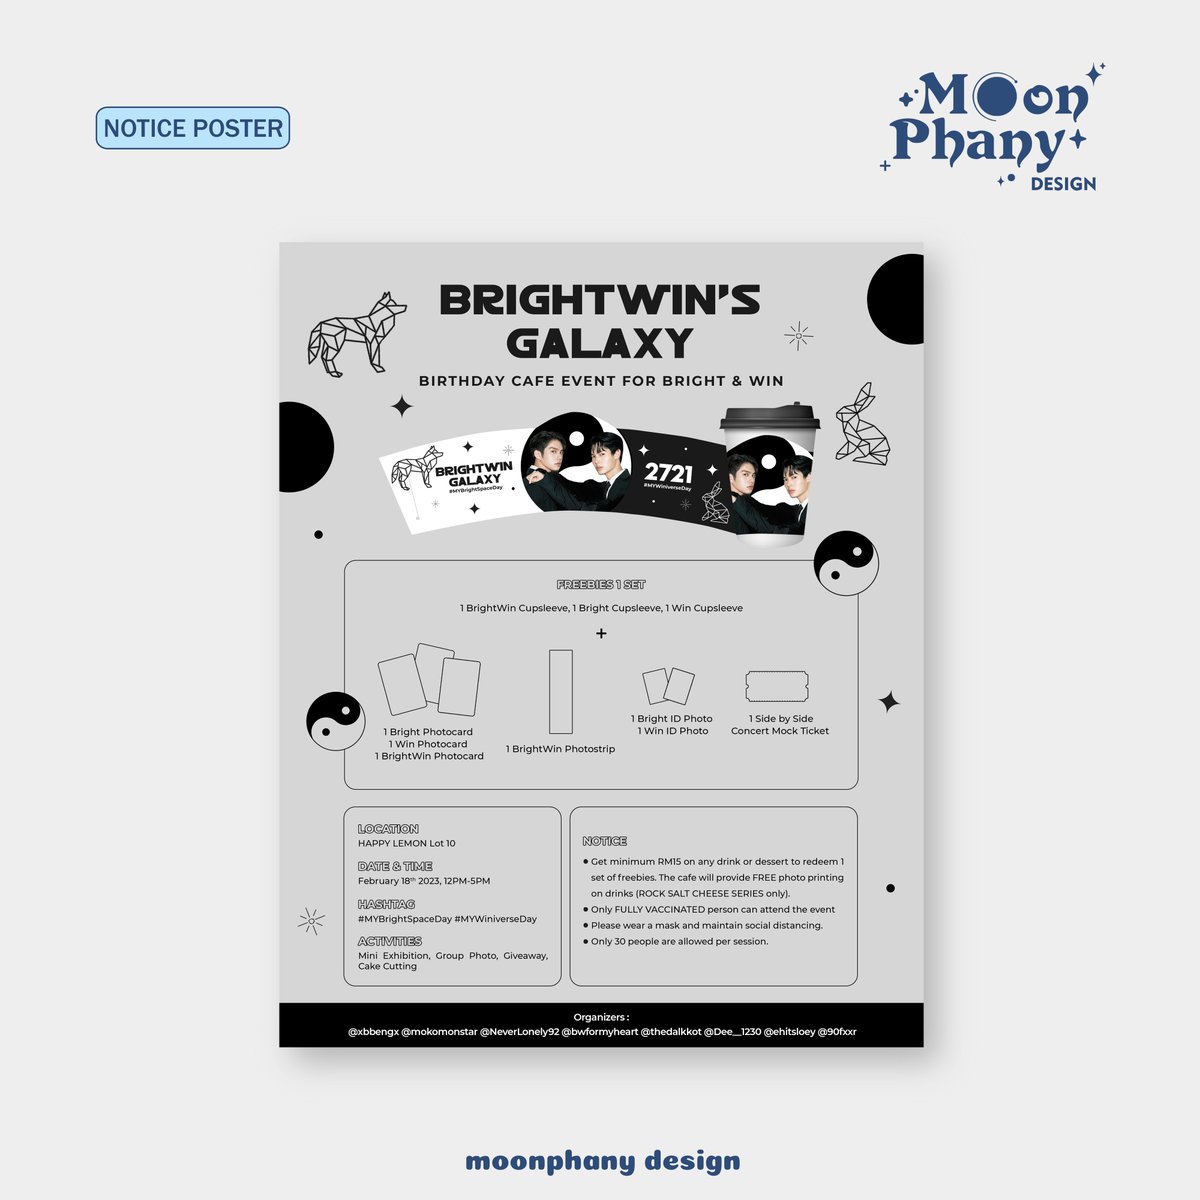 ㅡ brightwin notice poster © moonphany design #bright #brightvachirawit #win #winmetawin #posterdesign #designcommission #jasadesain